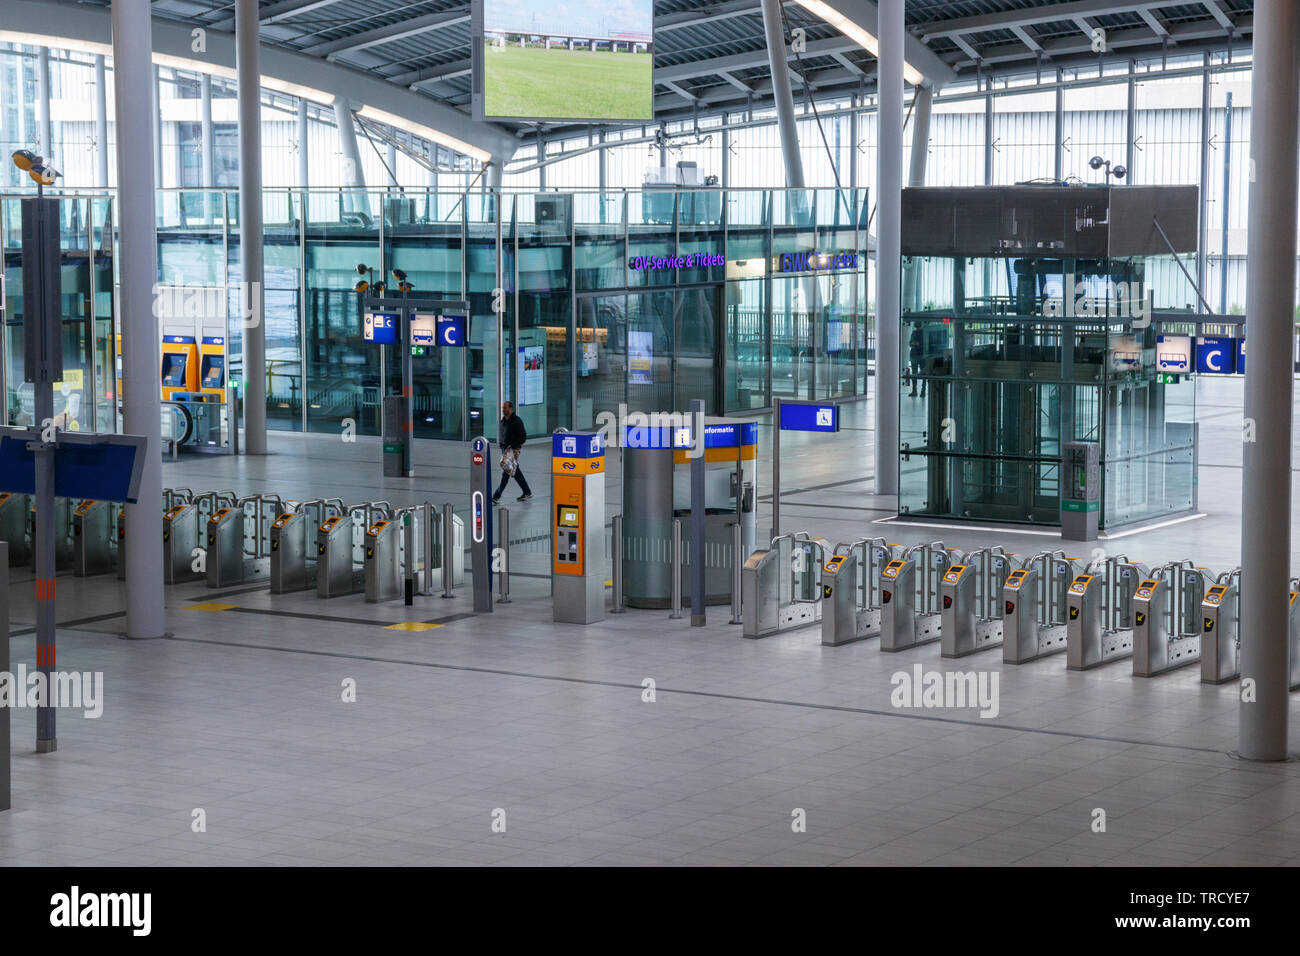 Einsamer Reisender, der zu einer Reihe von Fahrkartensperren in der adesolaten Centraal Bahnhofshalle läuft. Utrechter, Niederlande. Stockfoto